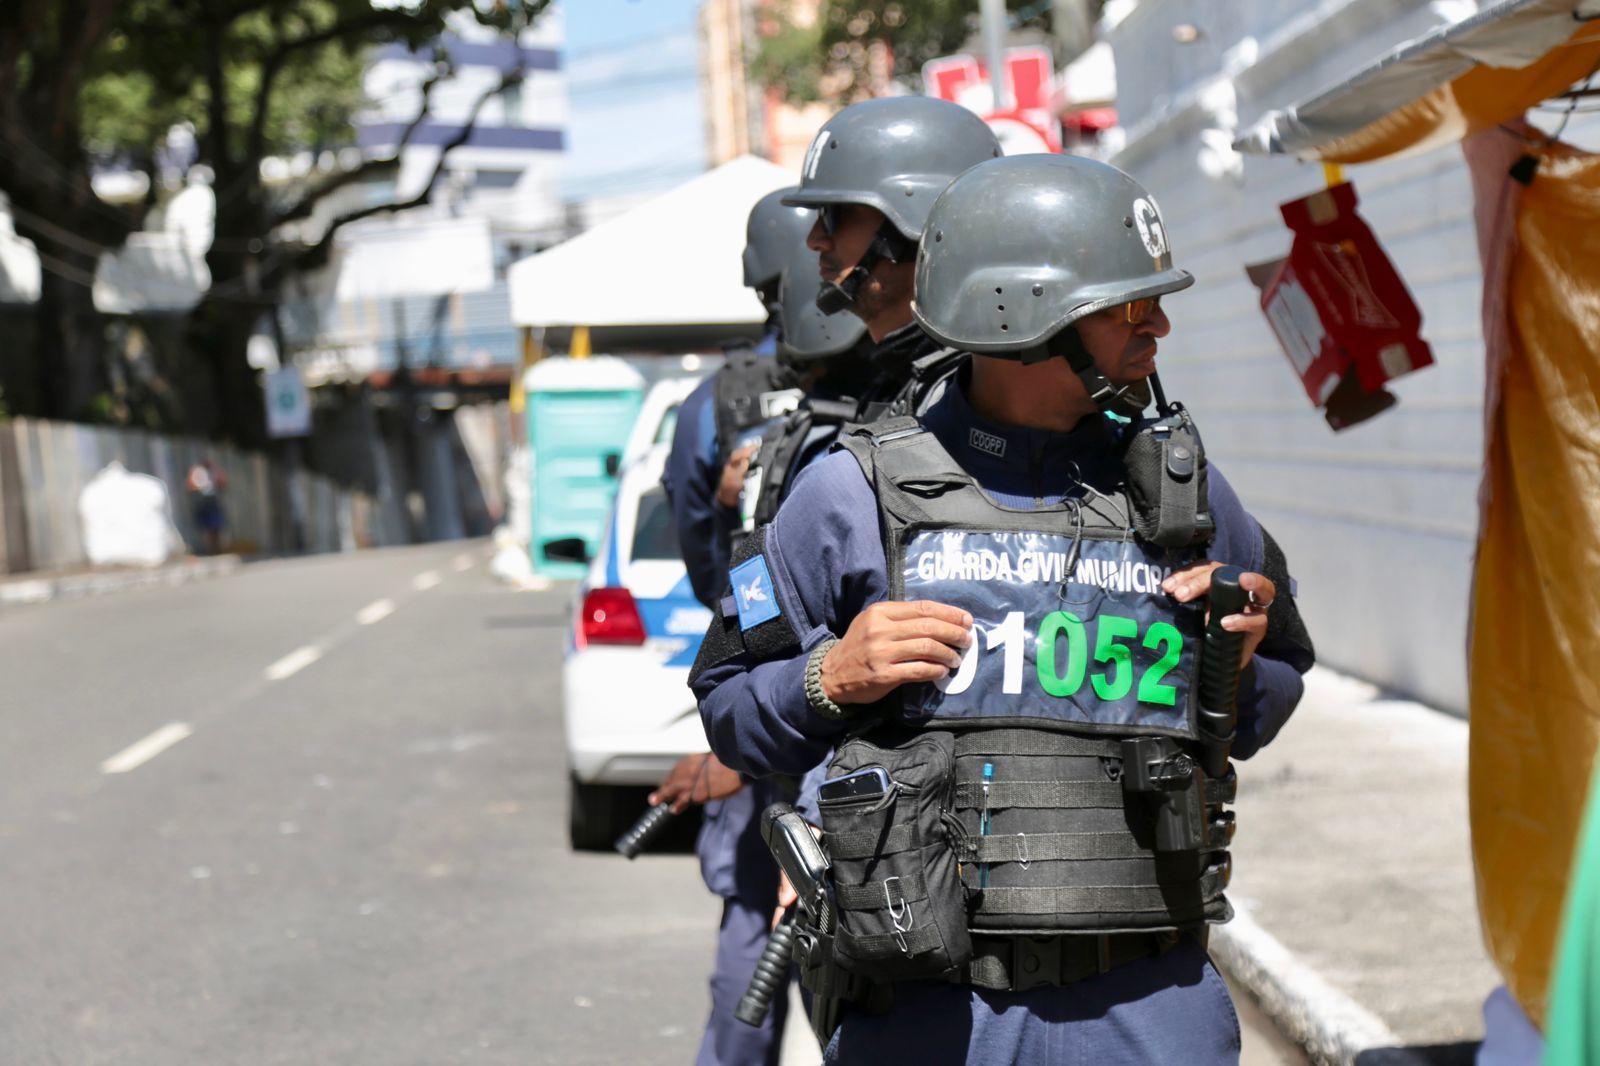 Guarda Civil Municipal apreende quase 200 armas brancas nos circuitos do Carnaval